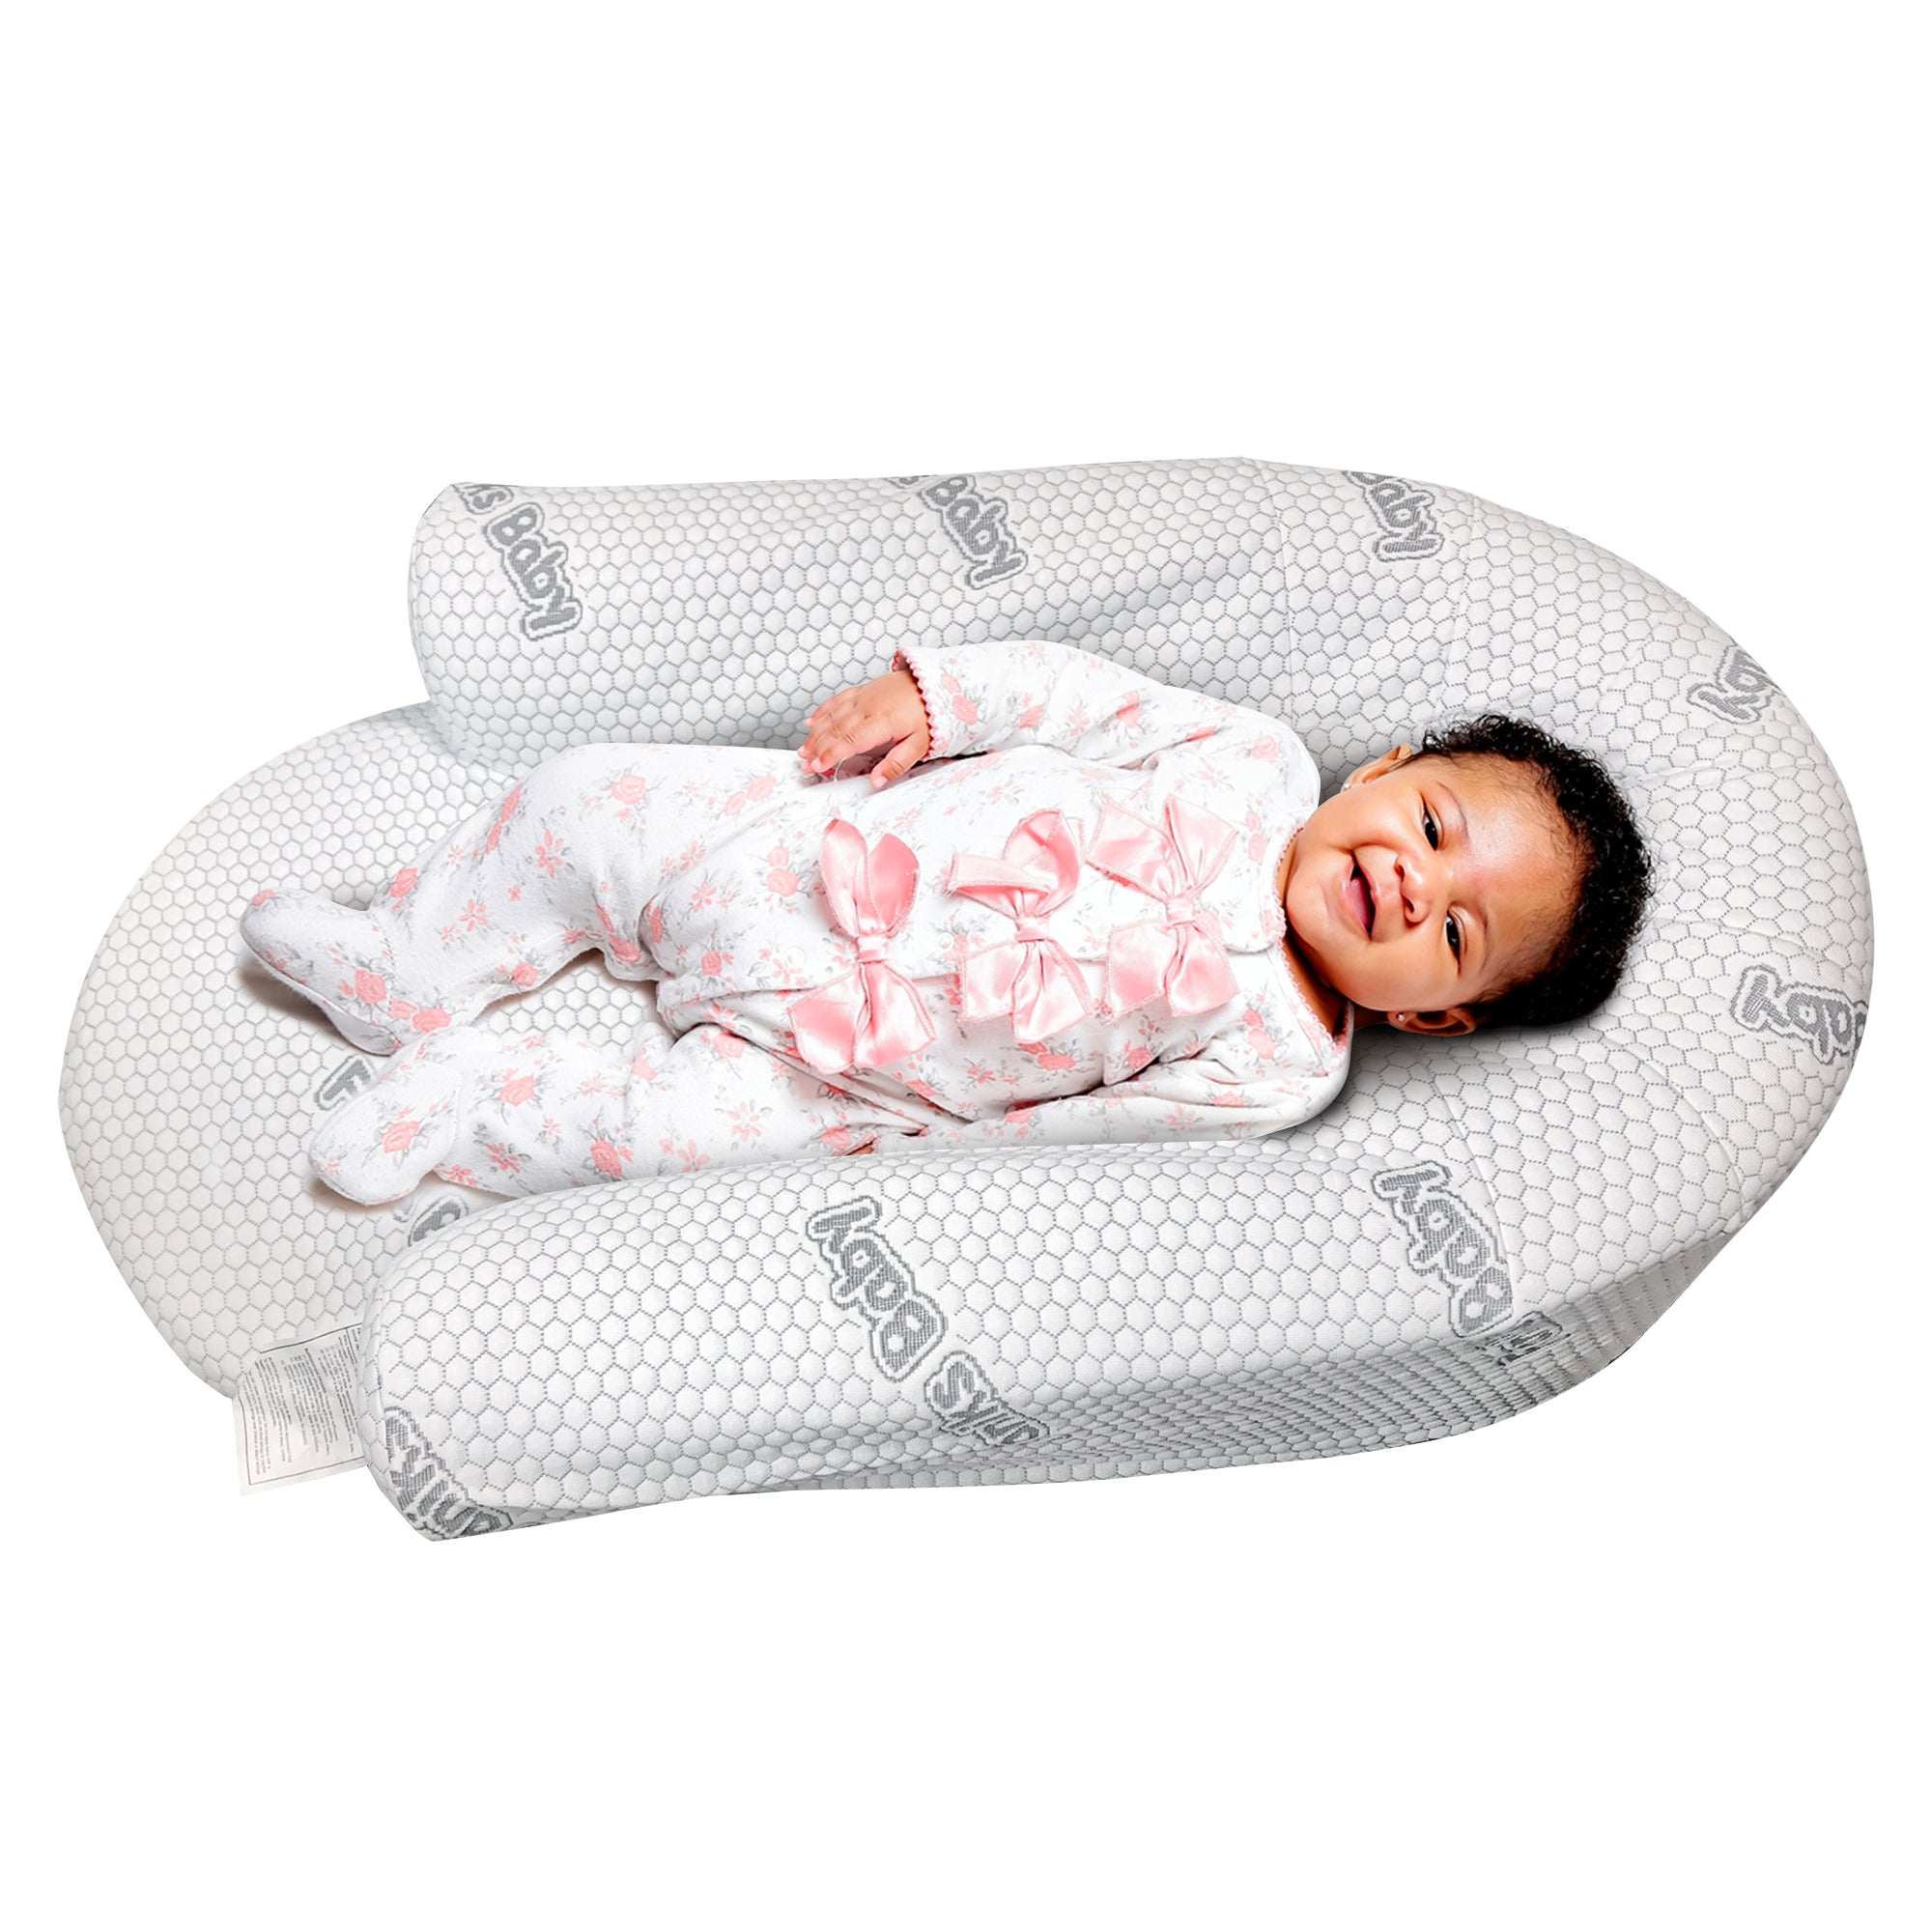 Faniks Baby Sleeper, Best Bed For Newborn